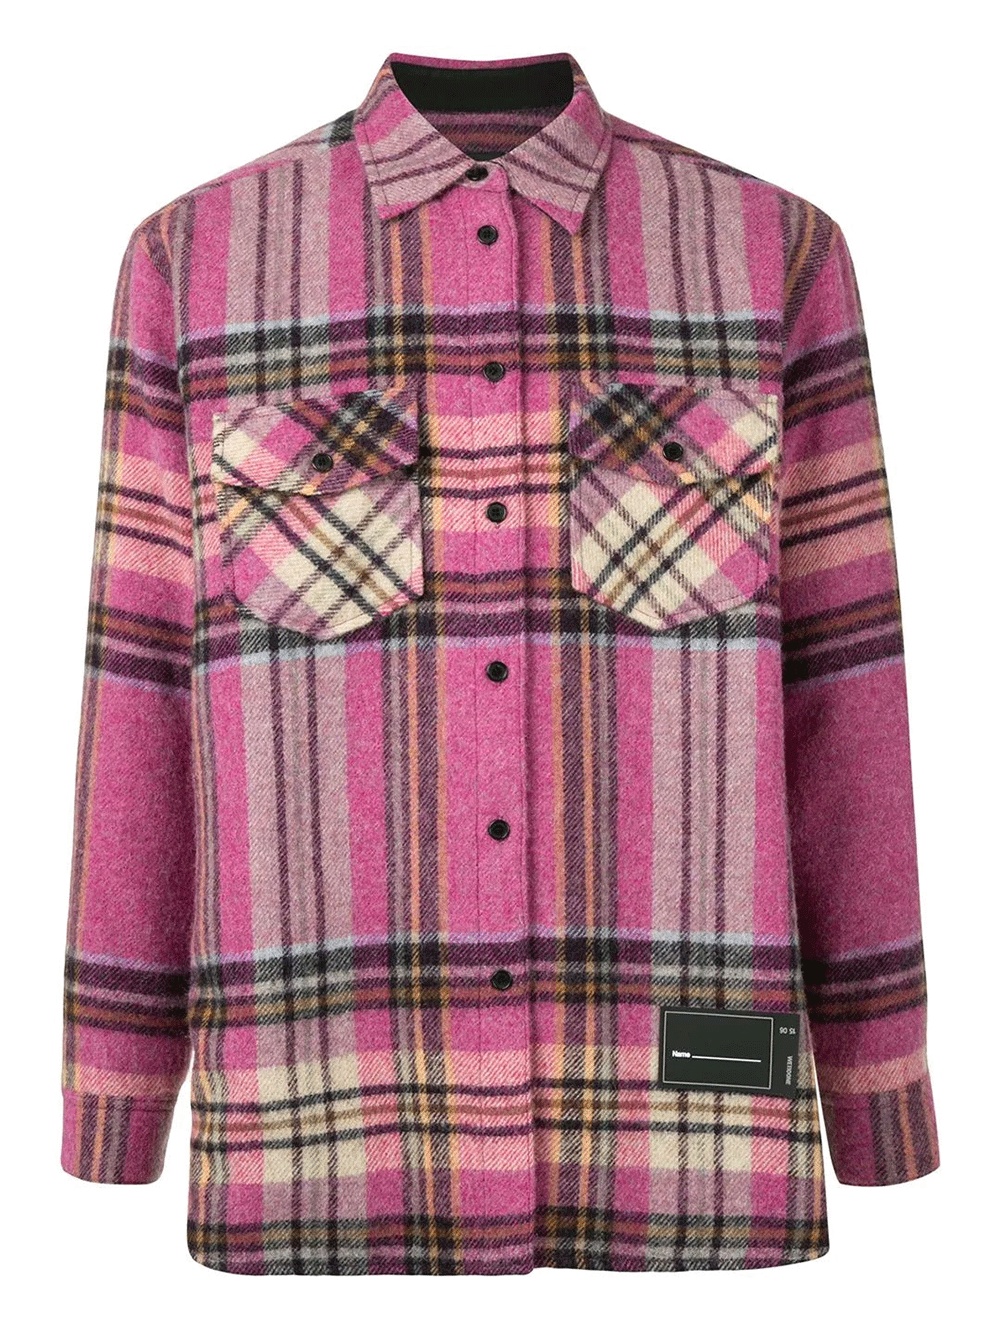 Wd Pink Check Wool Shirt - 1